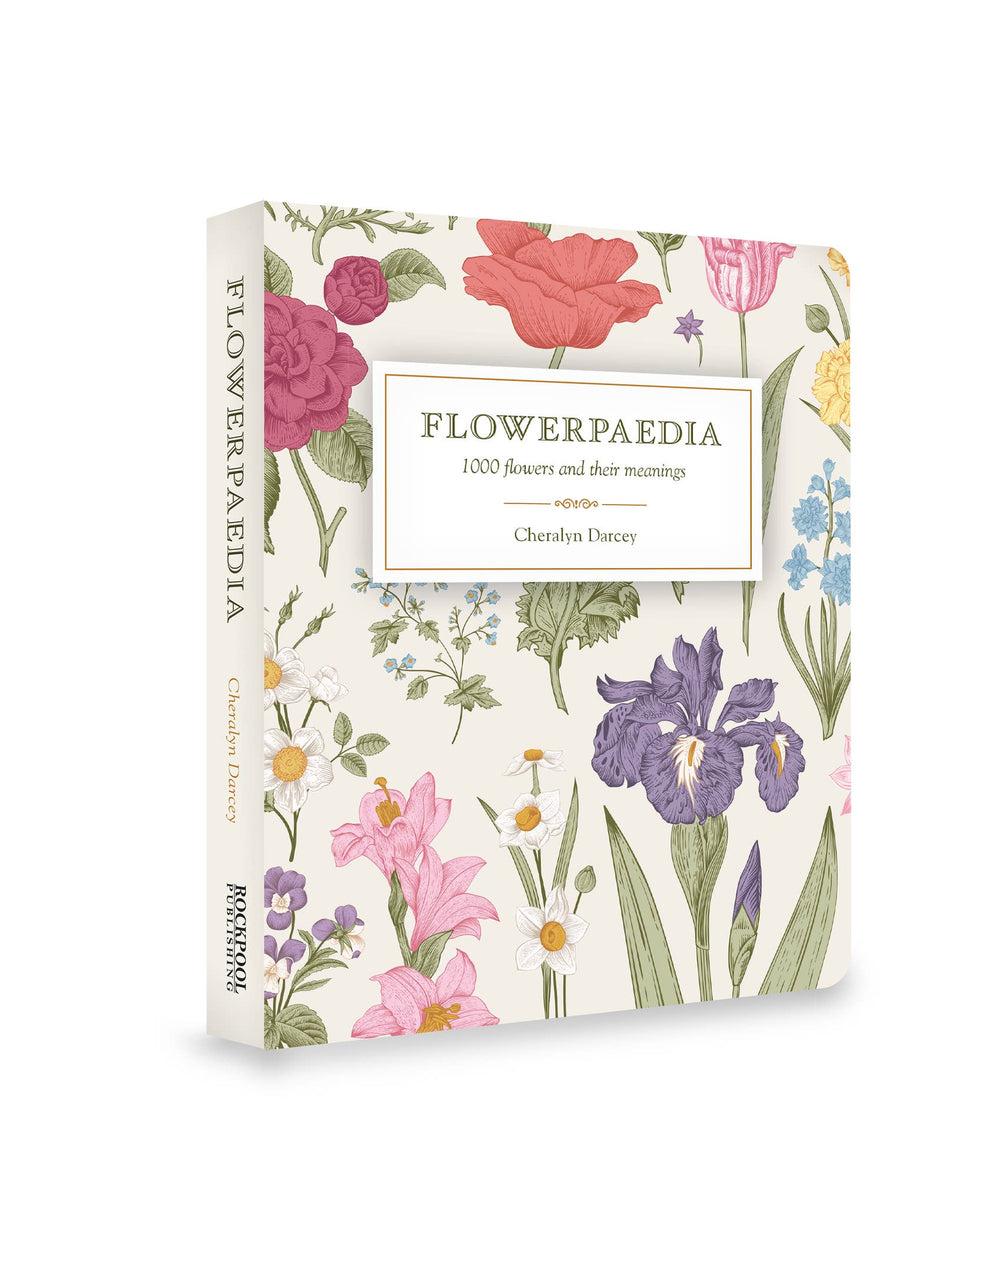 Flowerpaedia: 1000 Flowers and their Meanings - Stone & Spoon